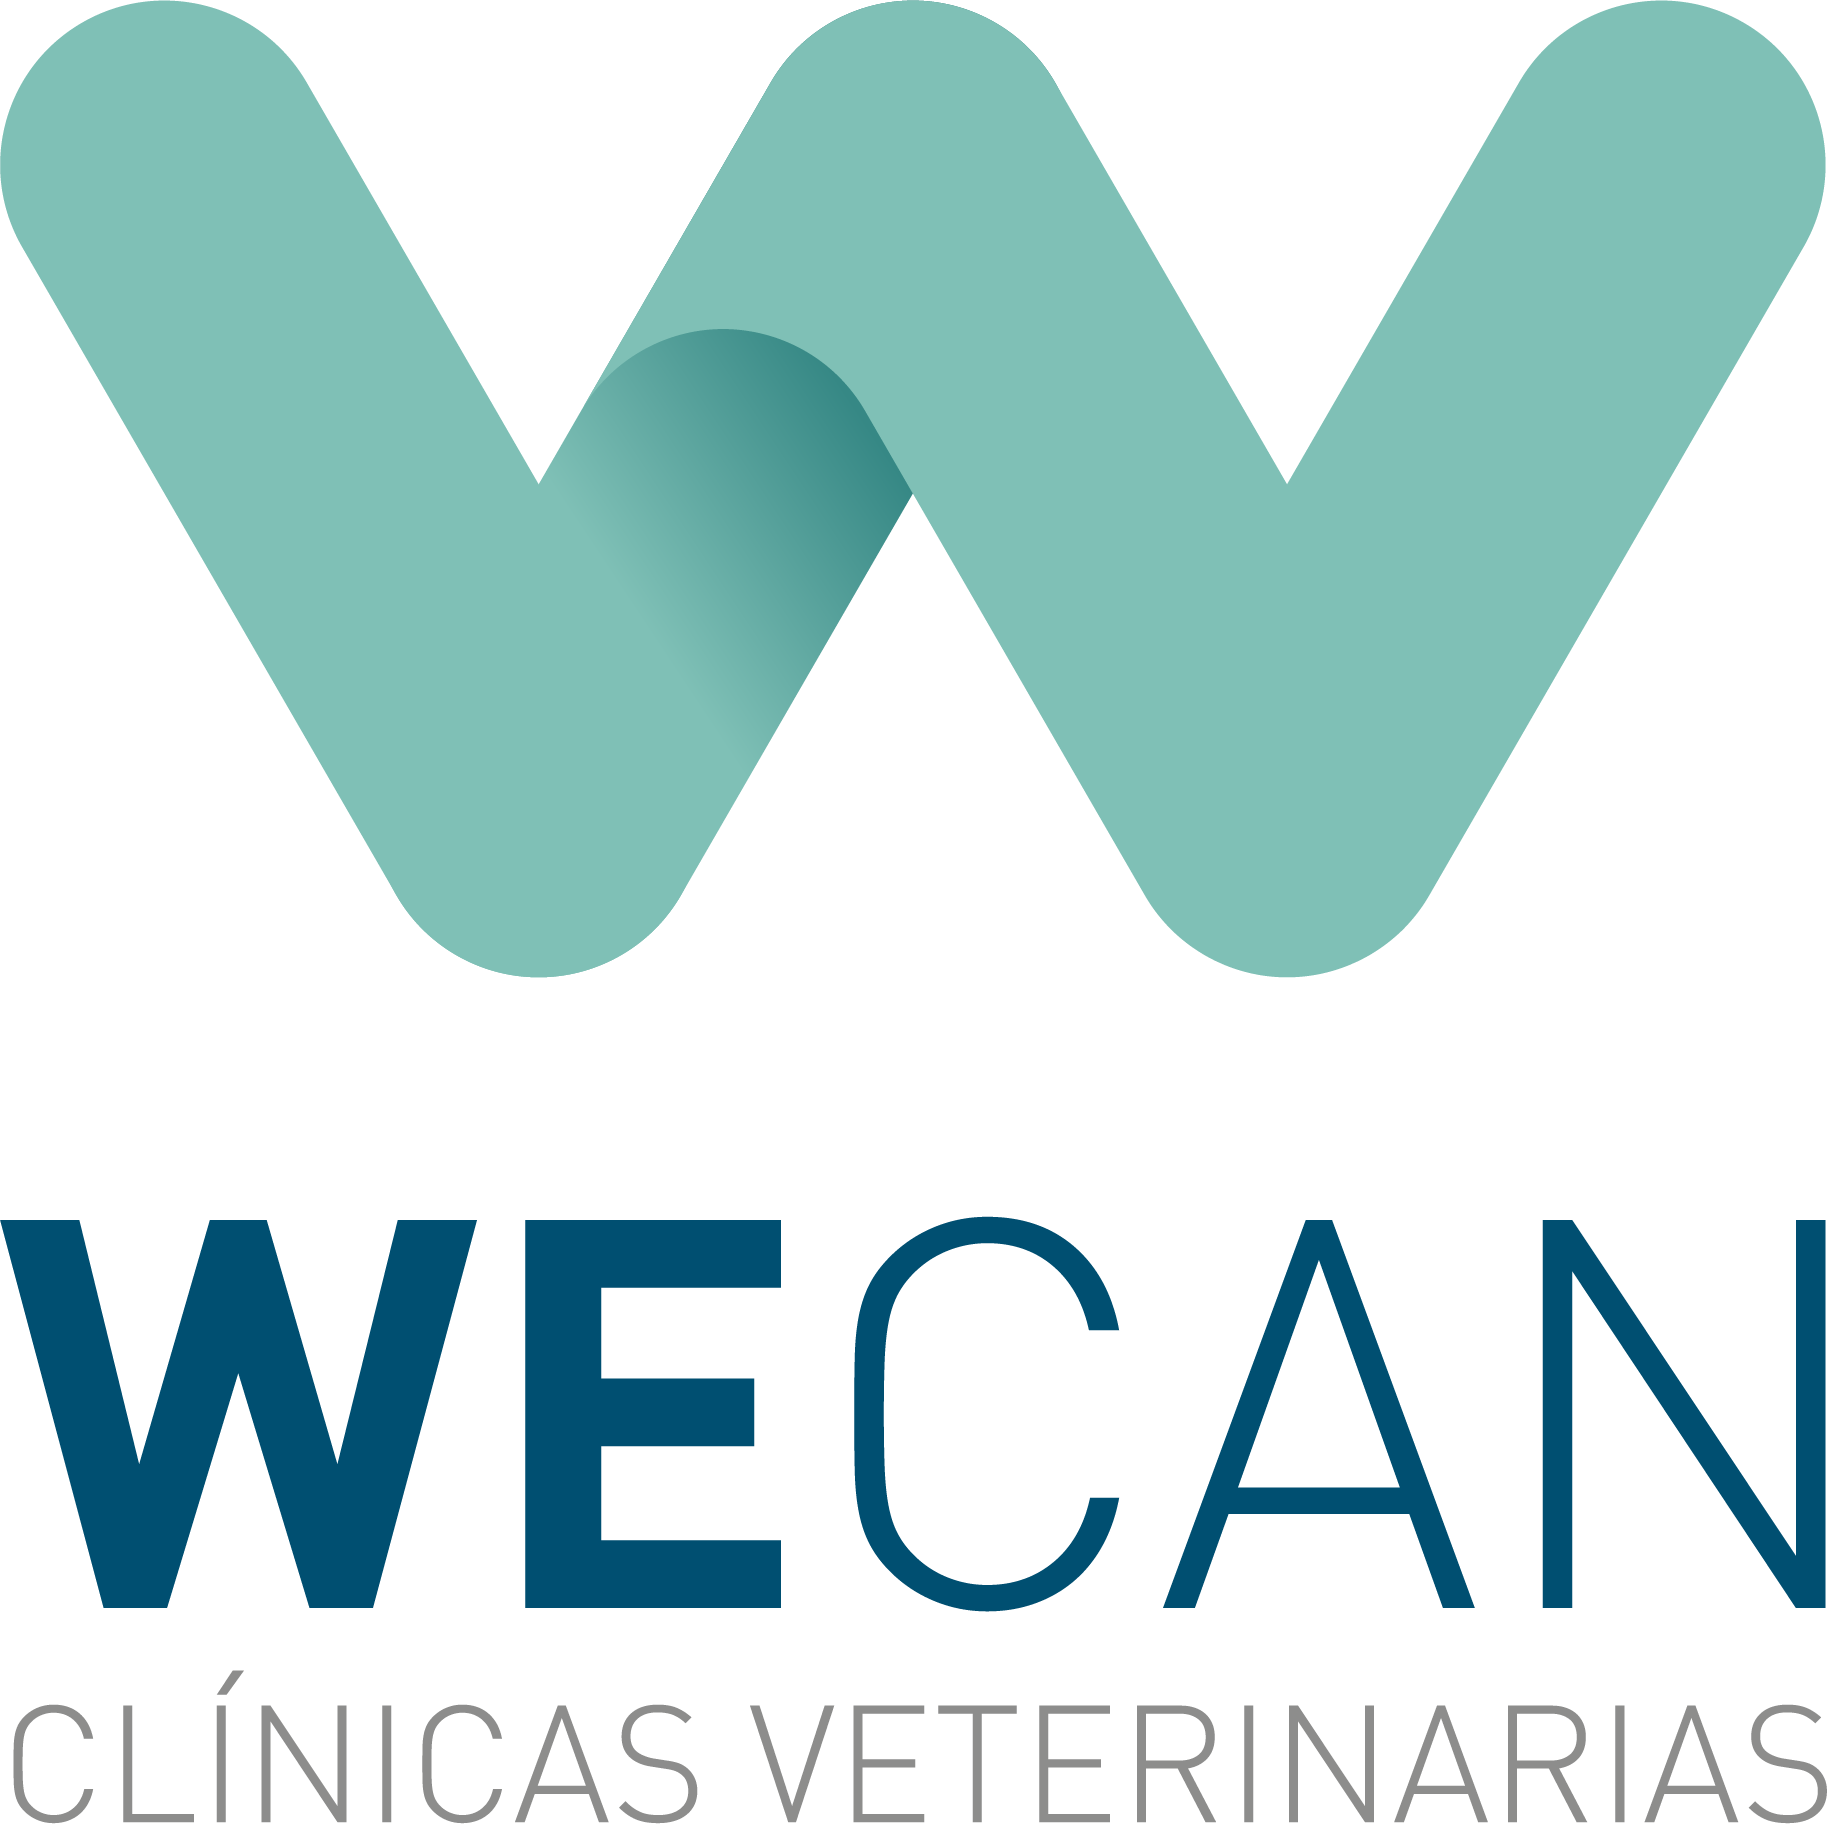 ¿Cómo puede ayudarme Wecan en mi clínica?